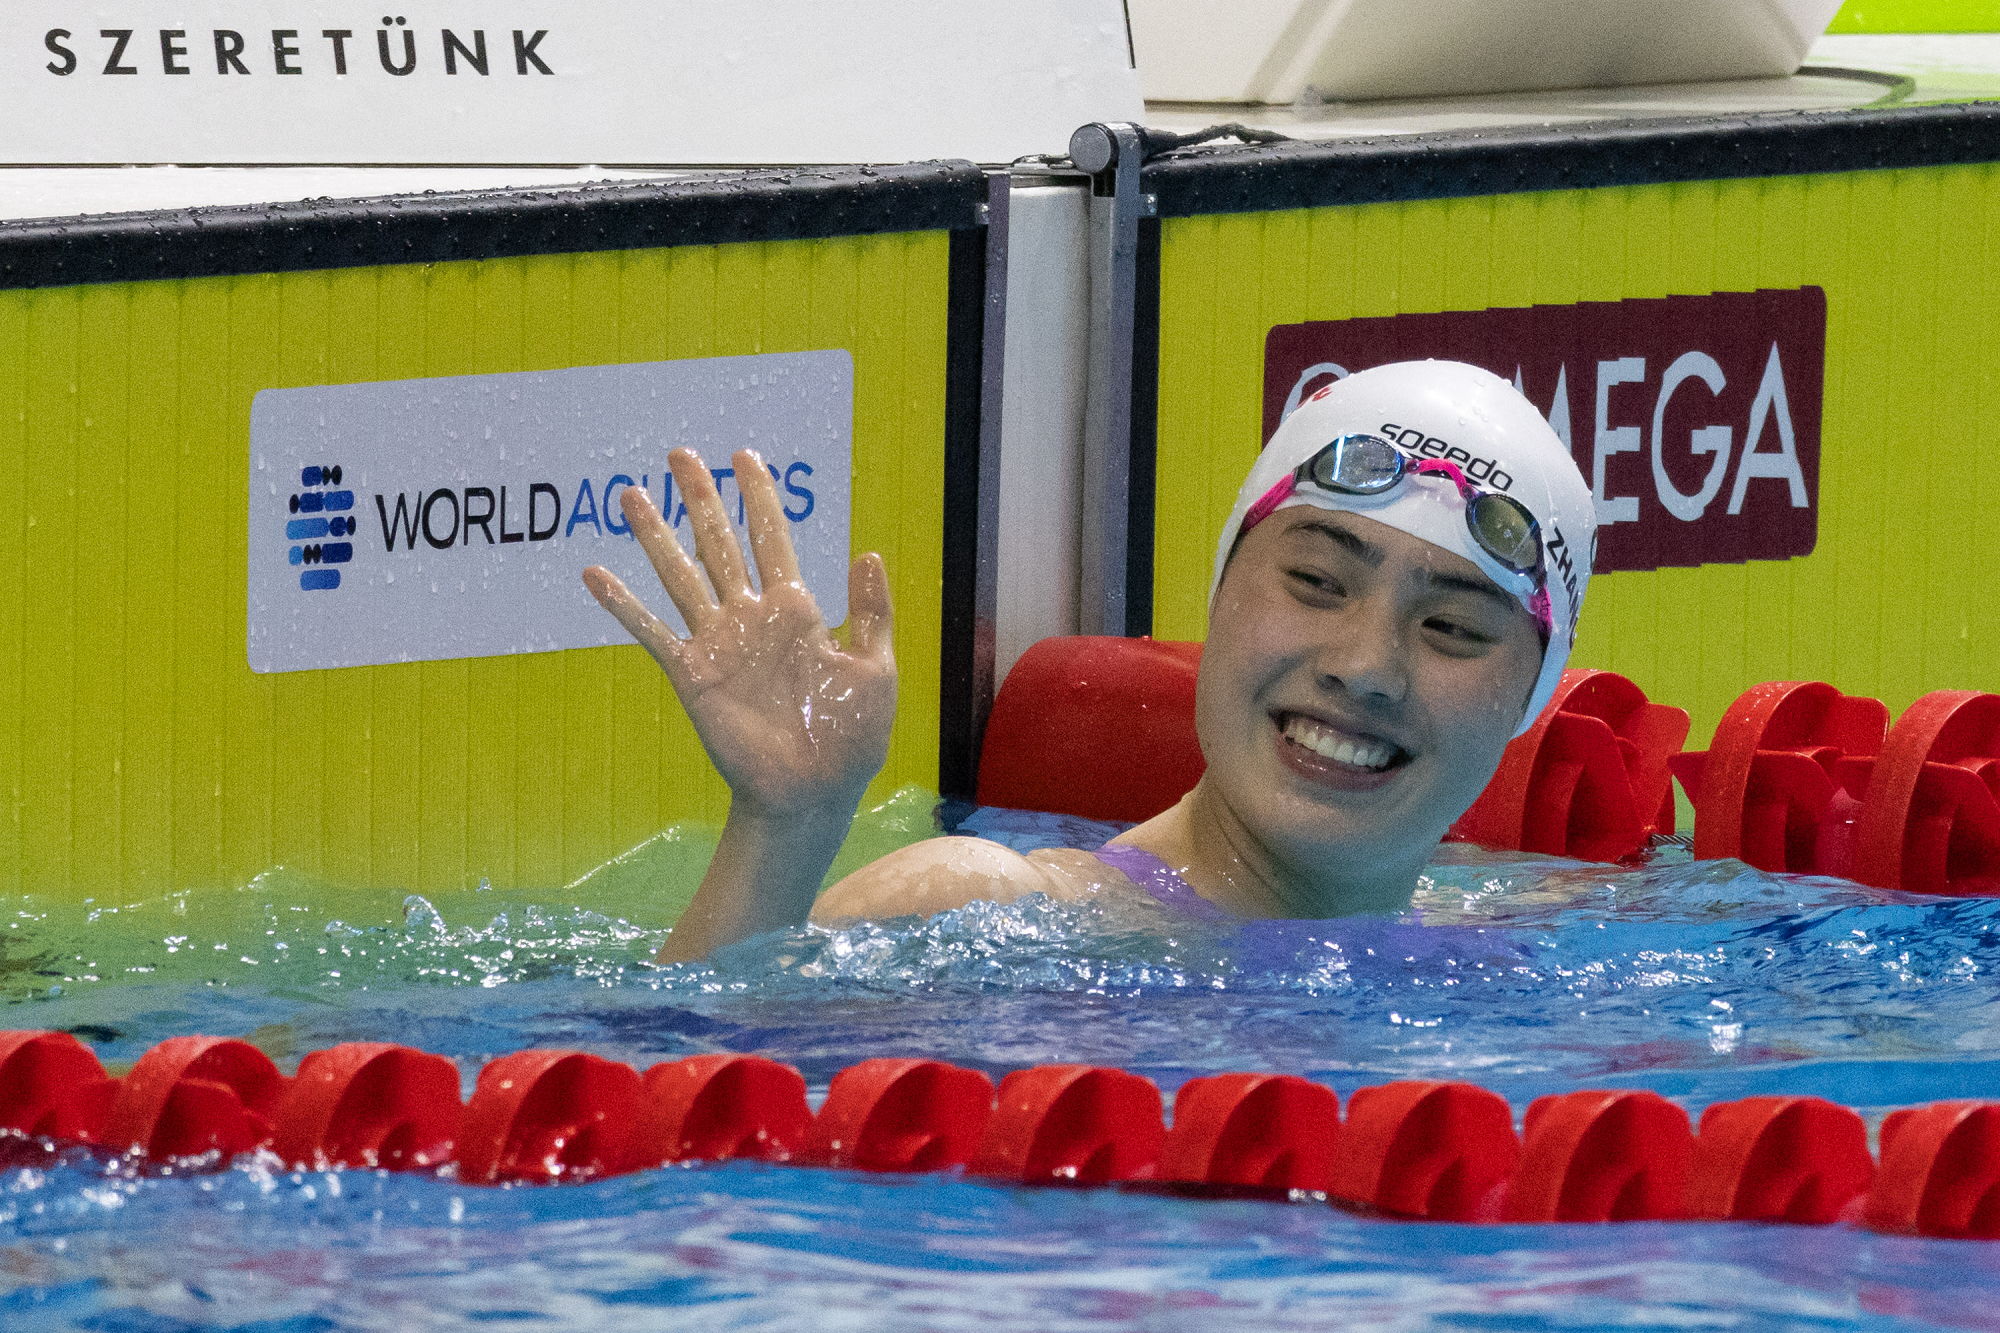 الصين تعلن تشكيلة فريق السباحة لأولمبياد باريس